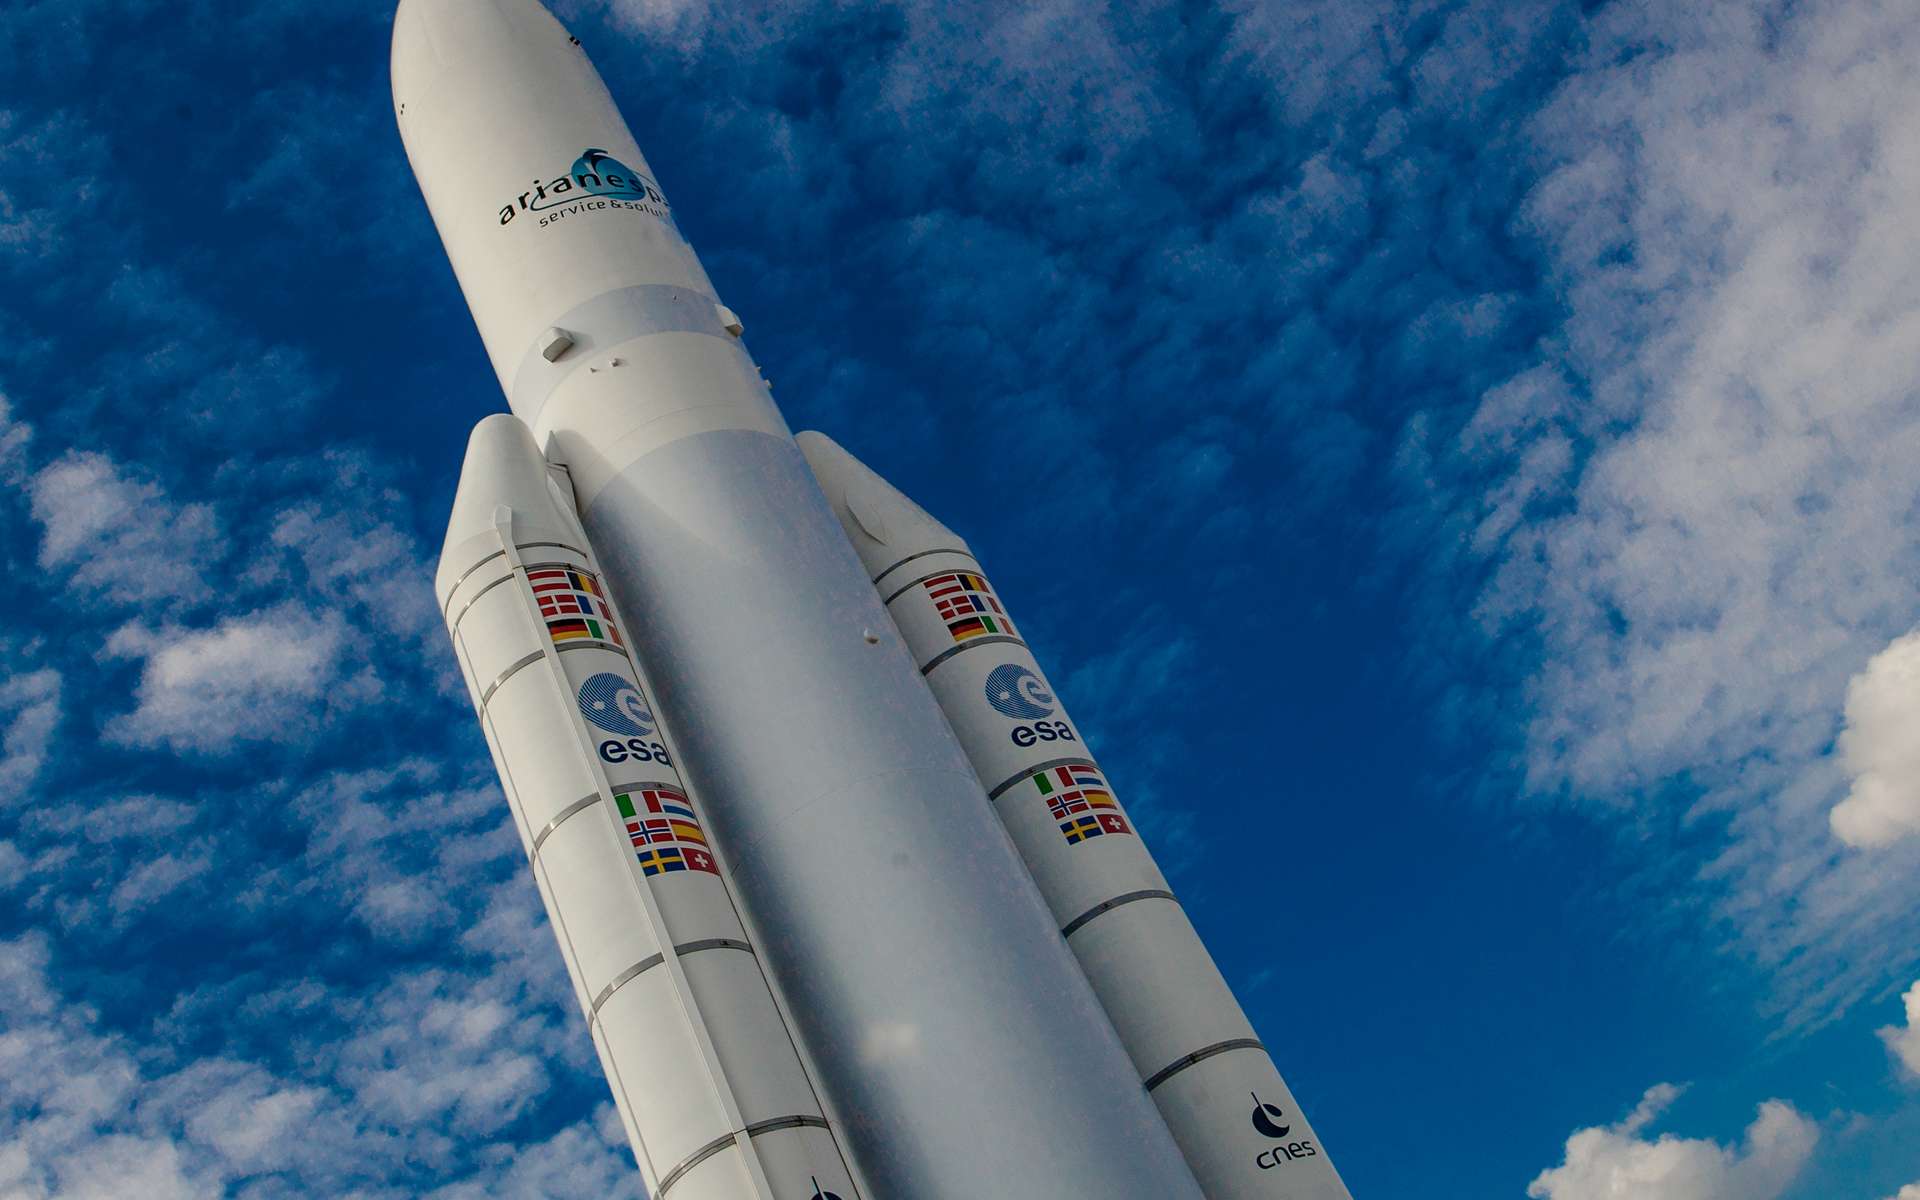 Le dernier vol de la mythique Ariane 5 aura lieu demain soir !